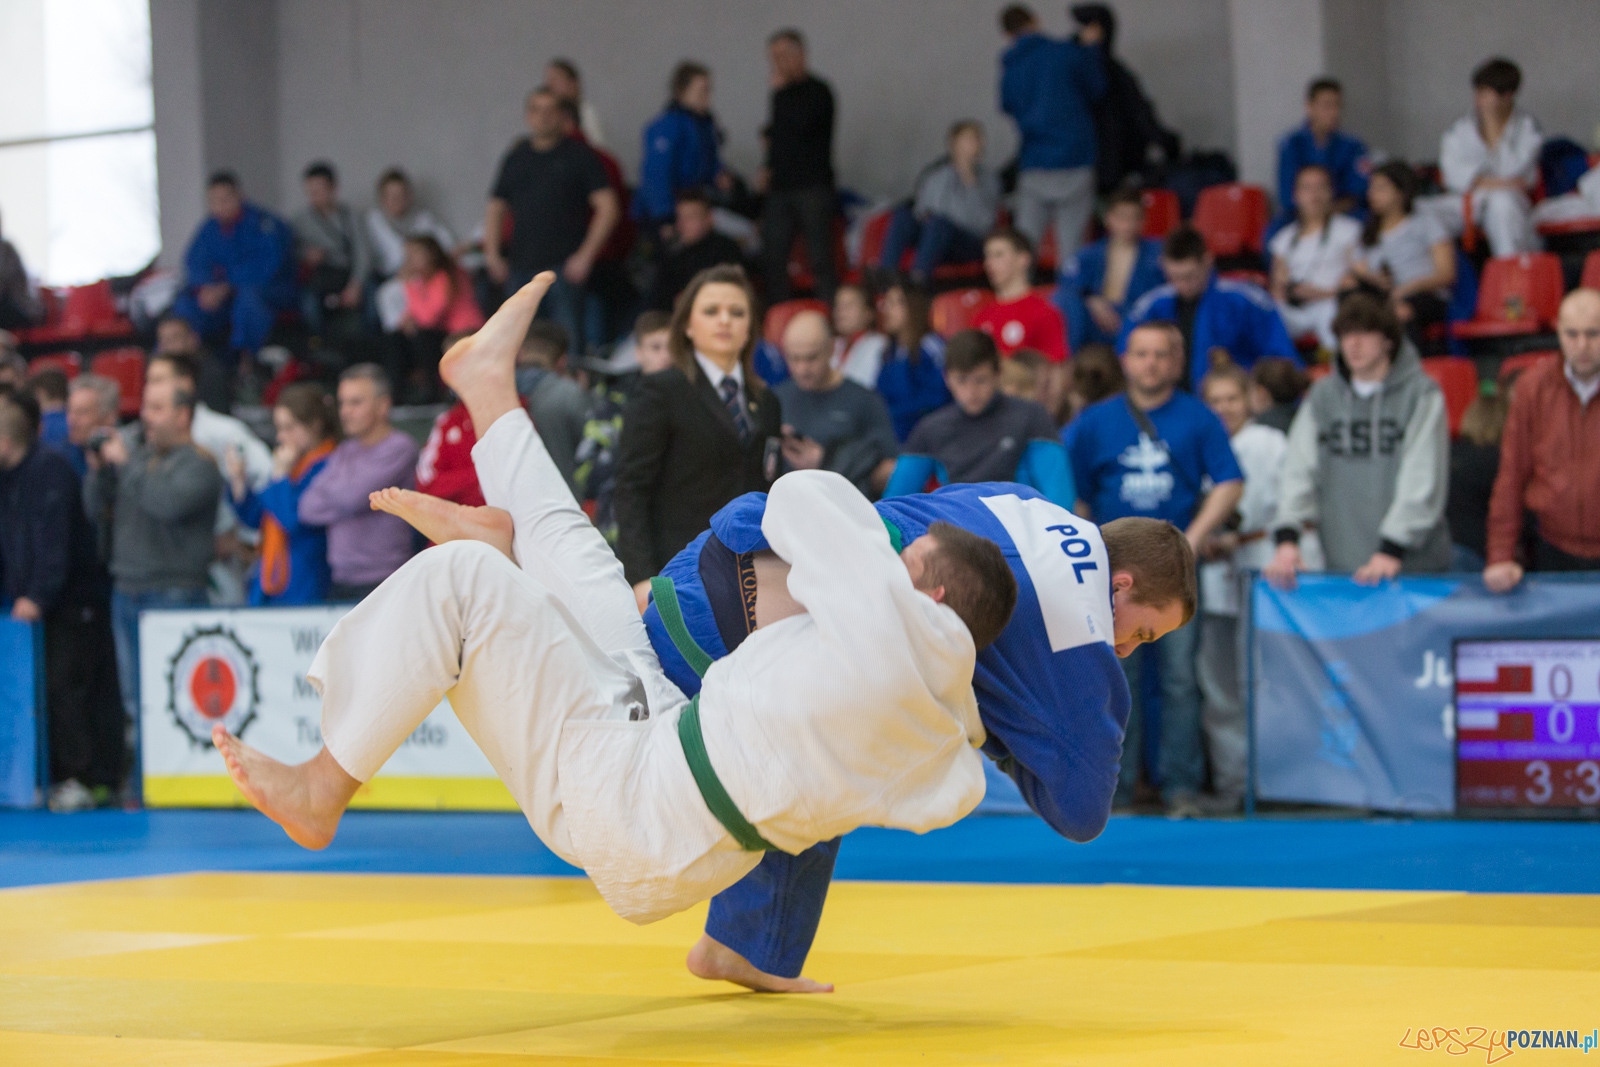 XIII Wielkopolski Międzynarodowy Turniej Judo w Suchym Lesie  Foto: lepszyPOZNAN.pl / Piotr Rychter